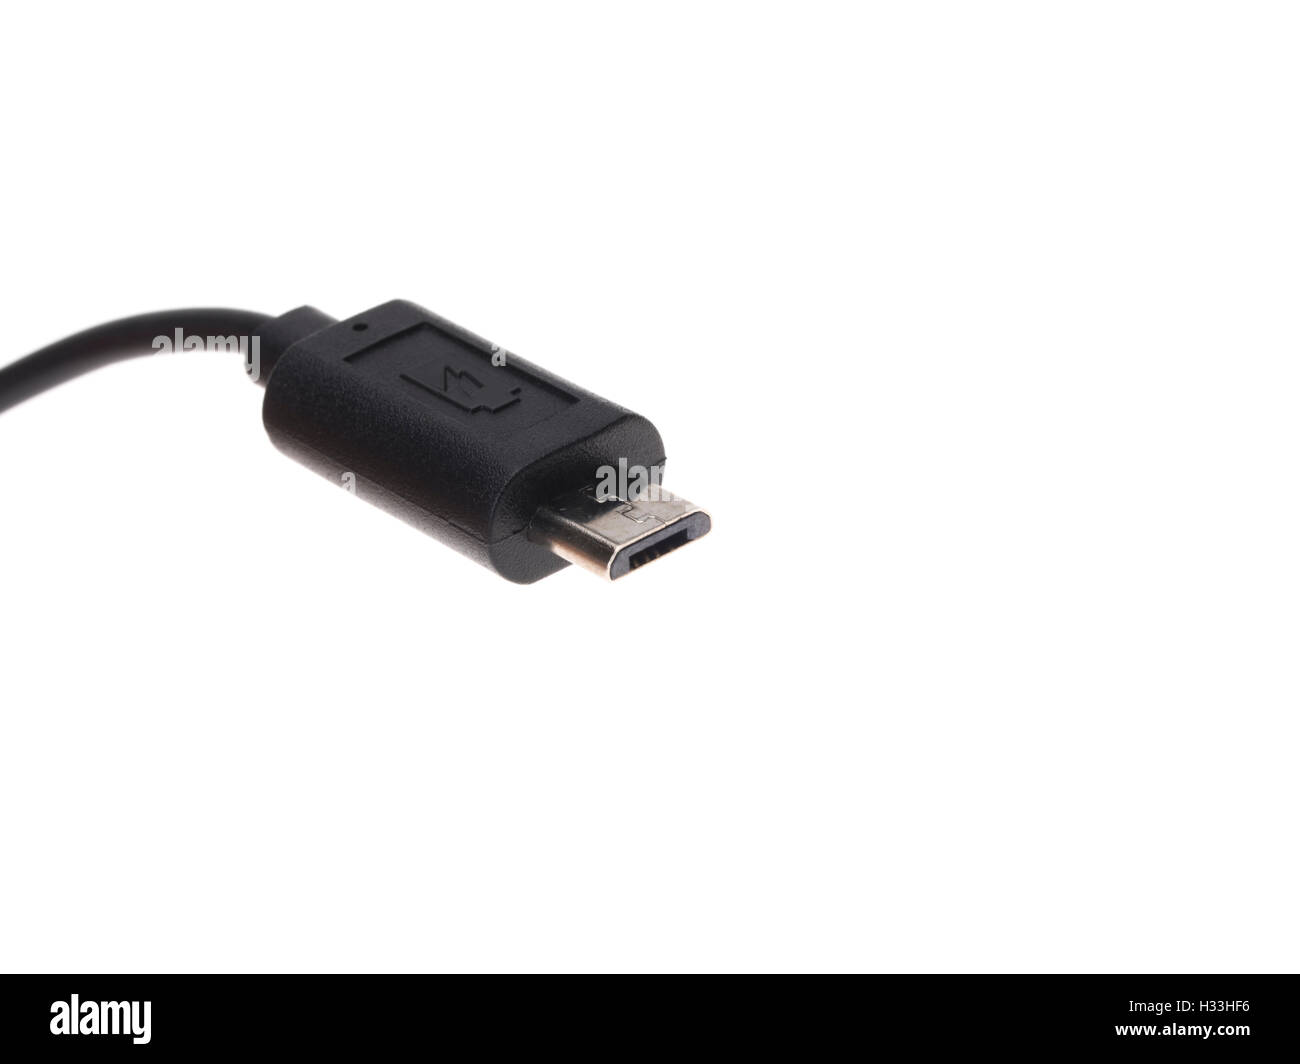 MicroB USB connector / plug Stock Photo